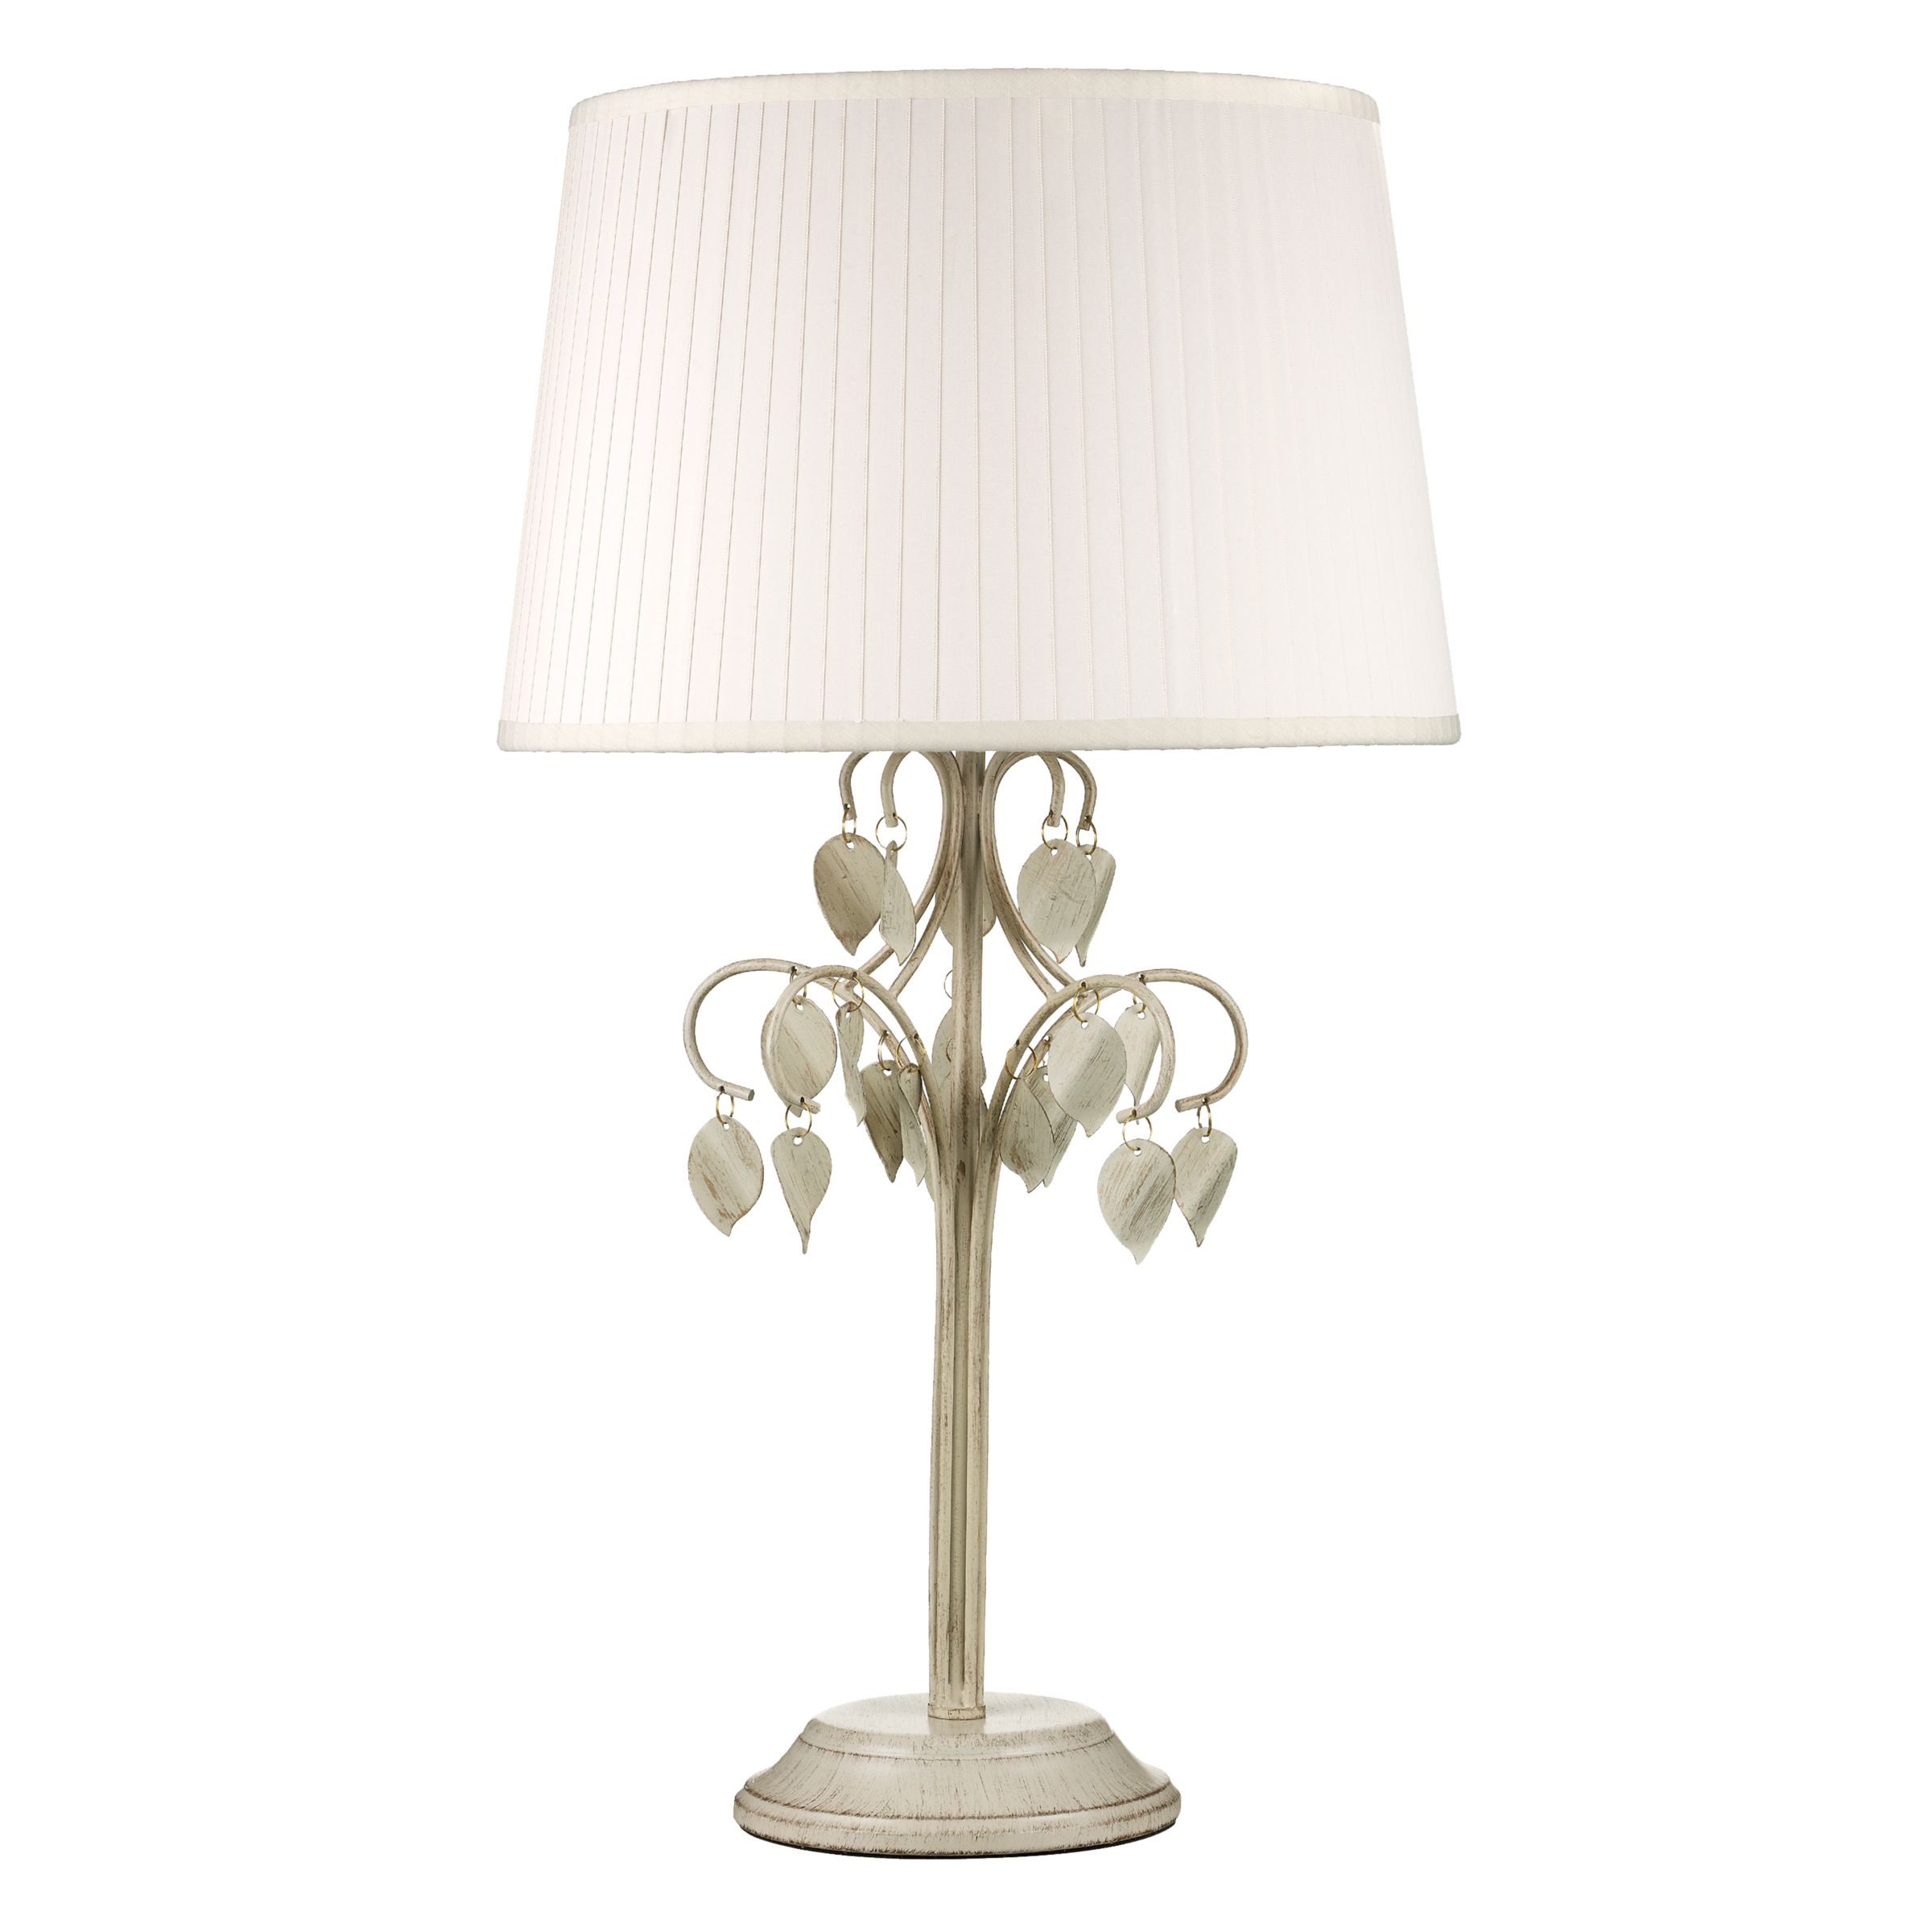 John Lewis Laurel Table Lamp